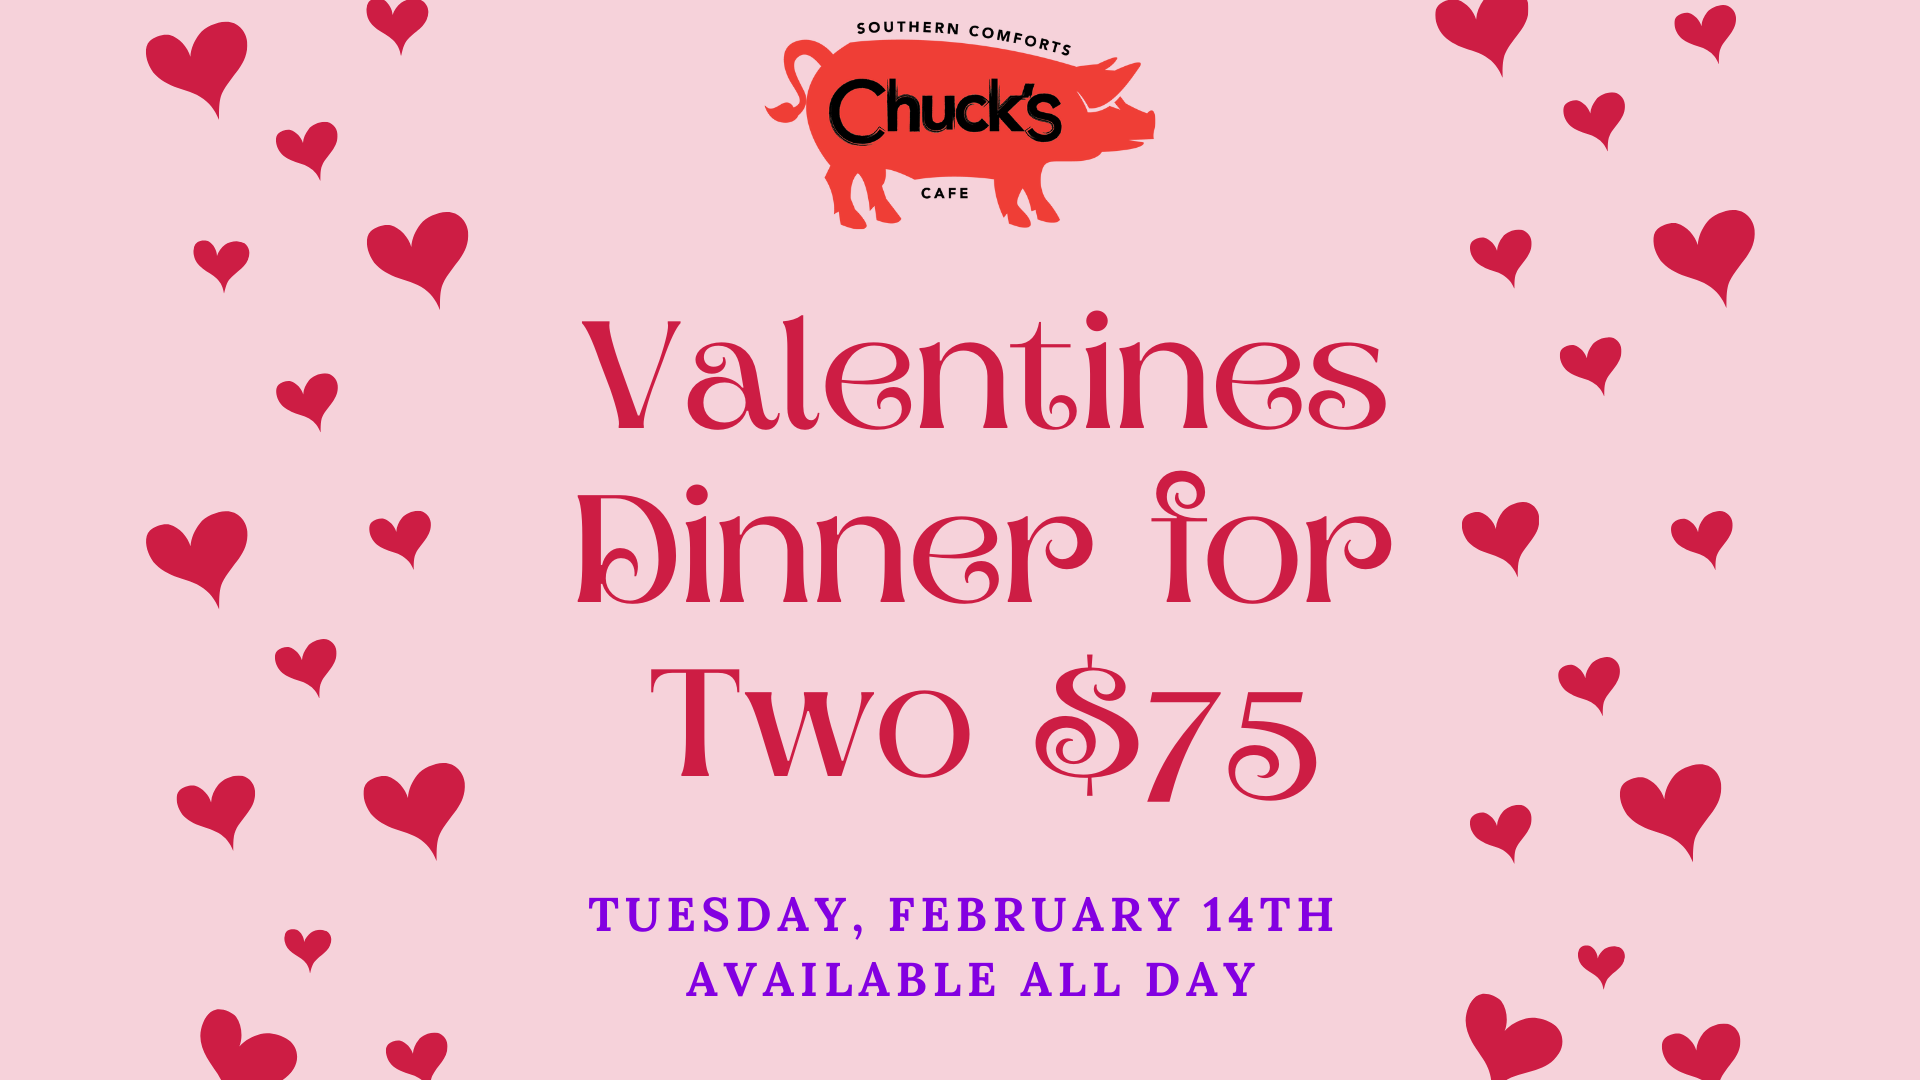 Chucks Valentine's Day Dinner for 2